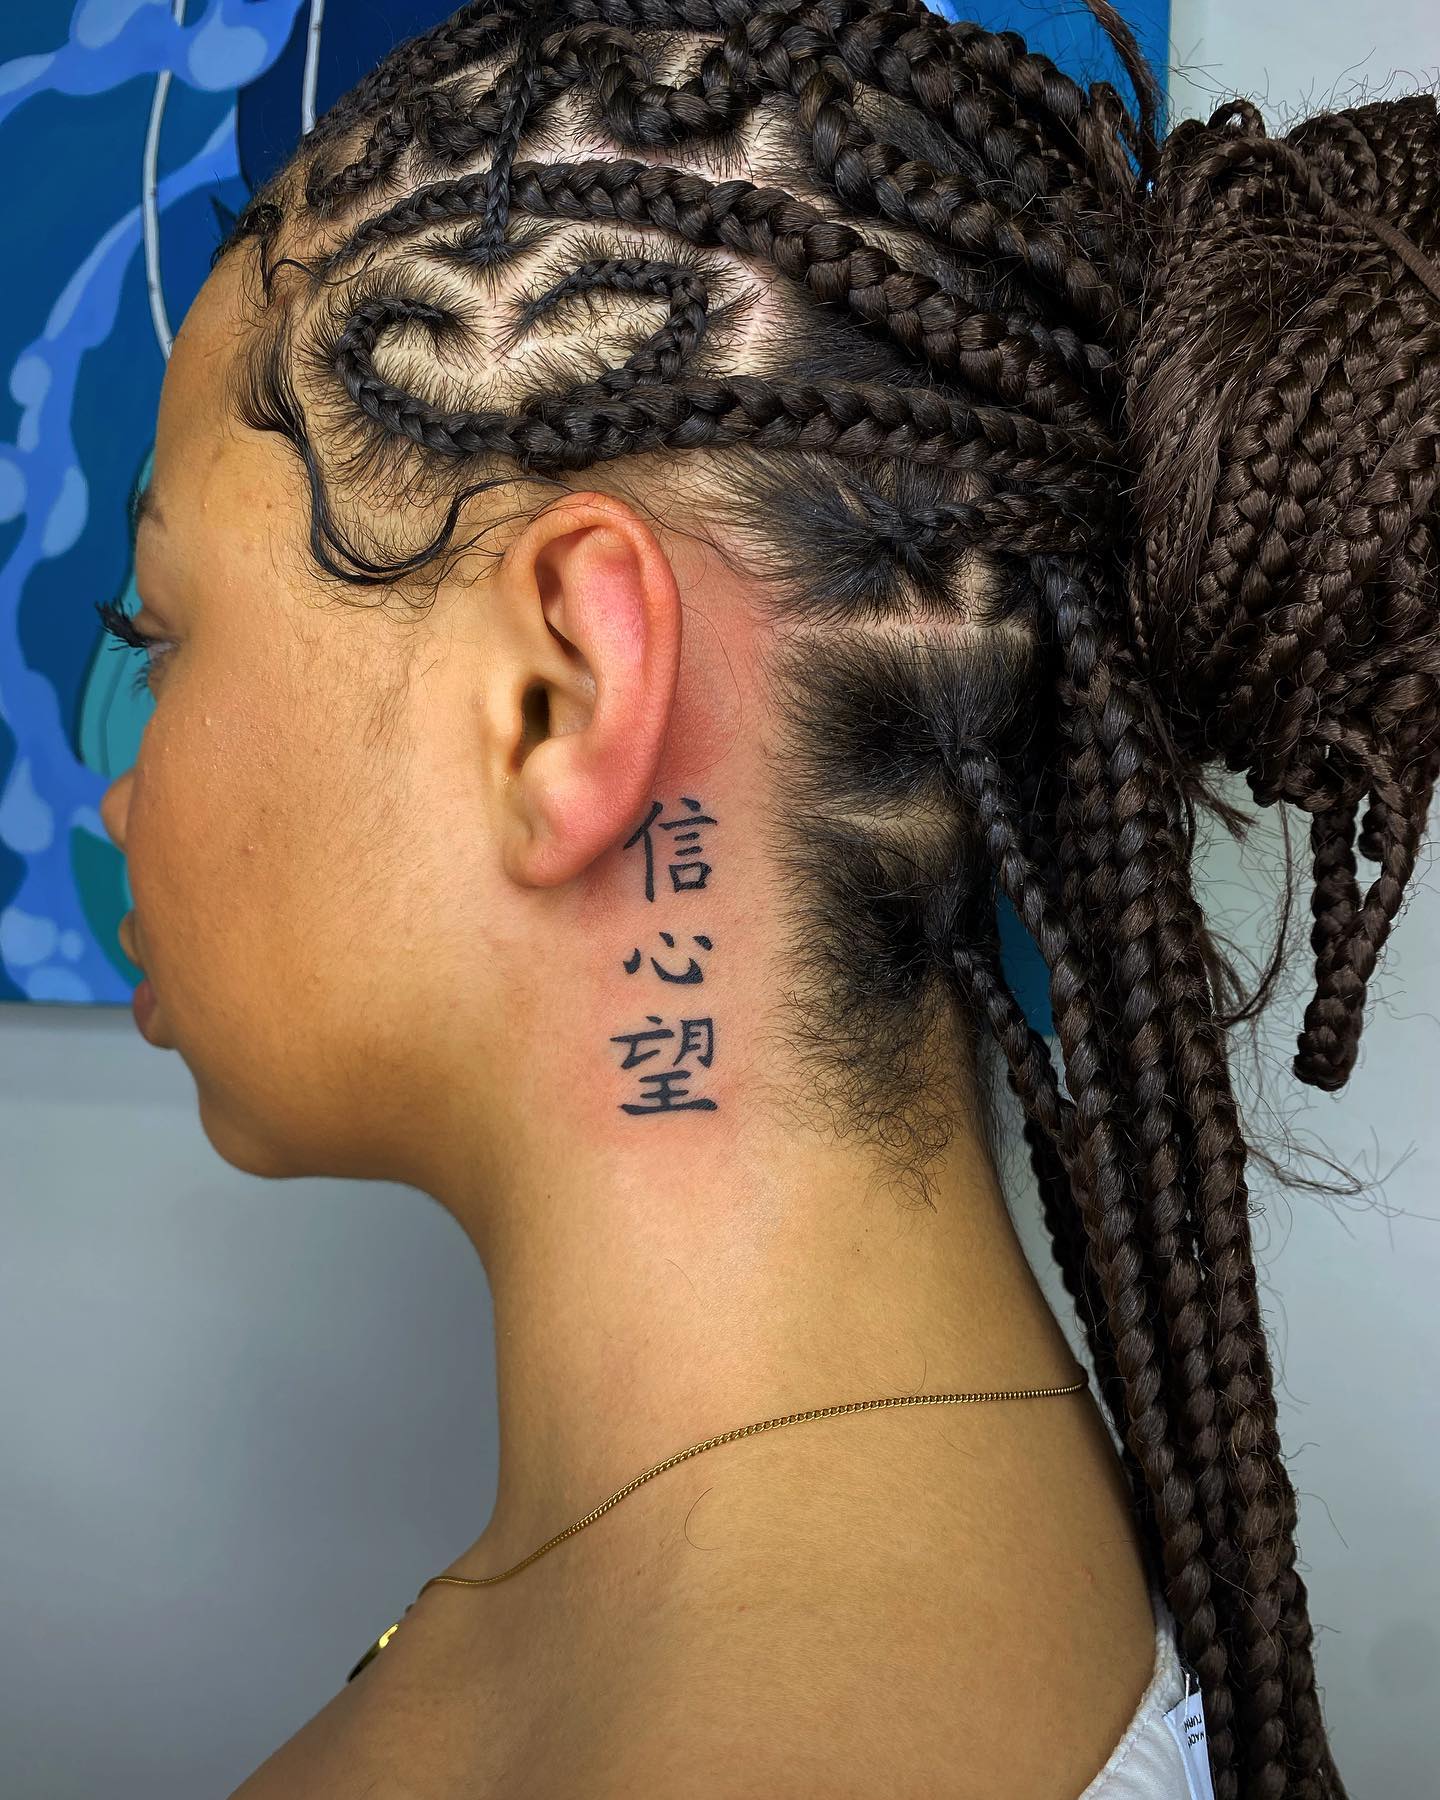 Diseño de tatuaje chino detrás de la oreja